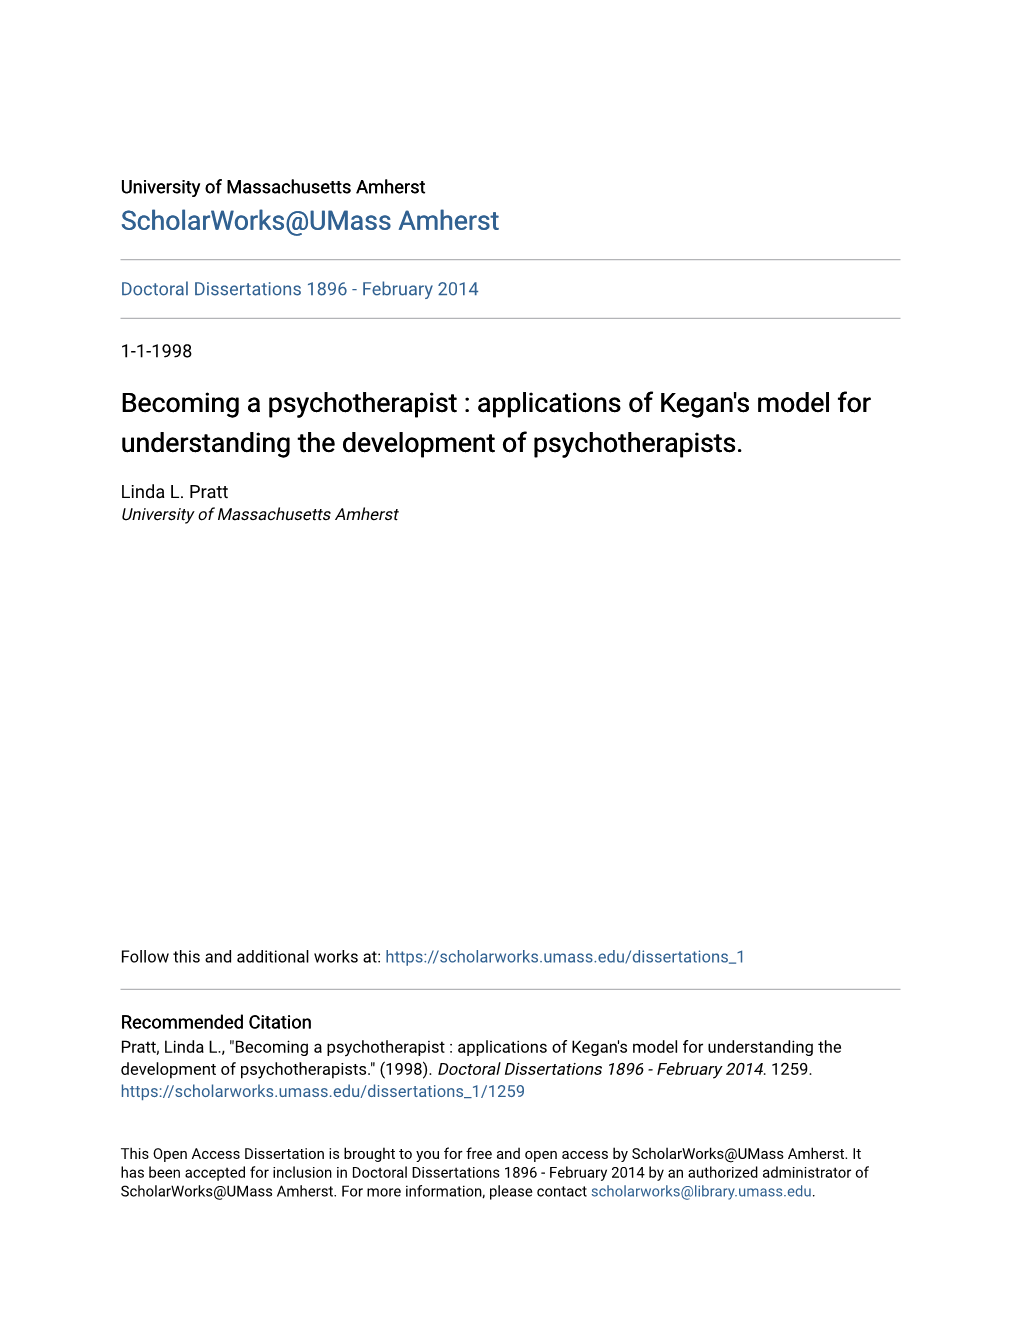 Applications of Kegan's Model for Understanding the Development of Psychotherapists